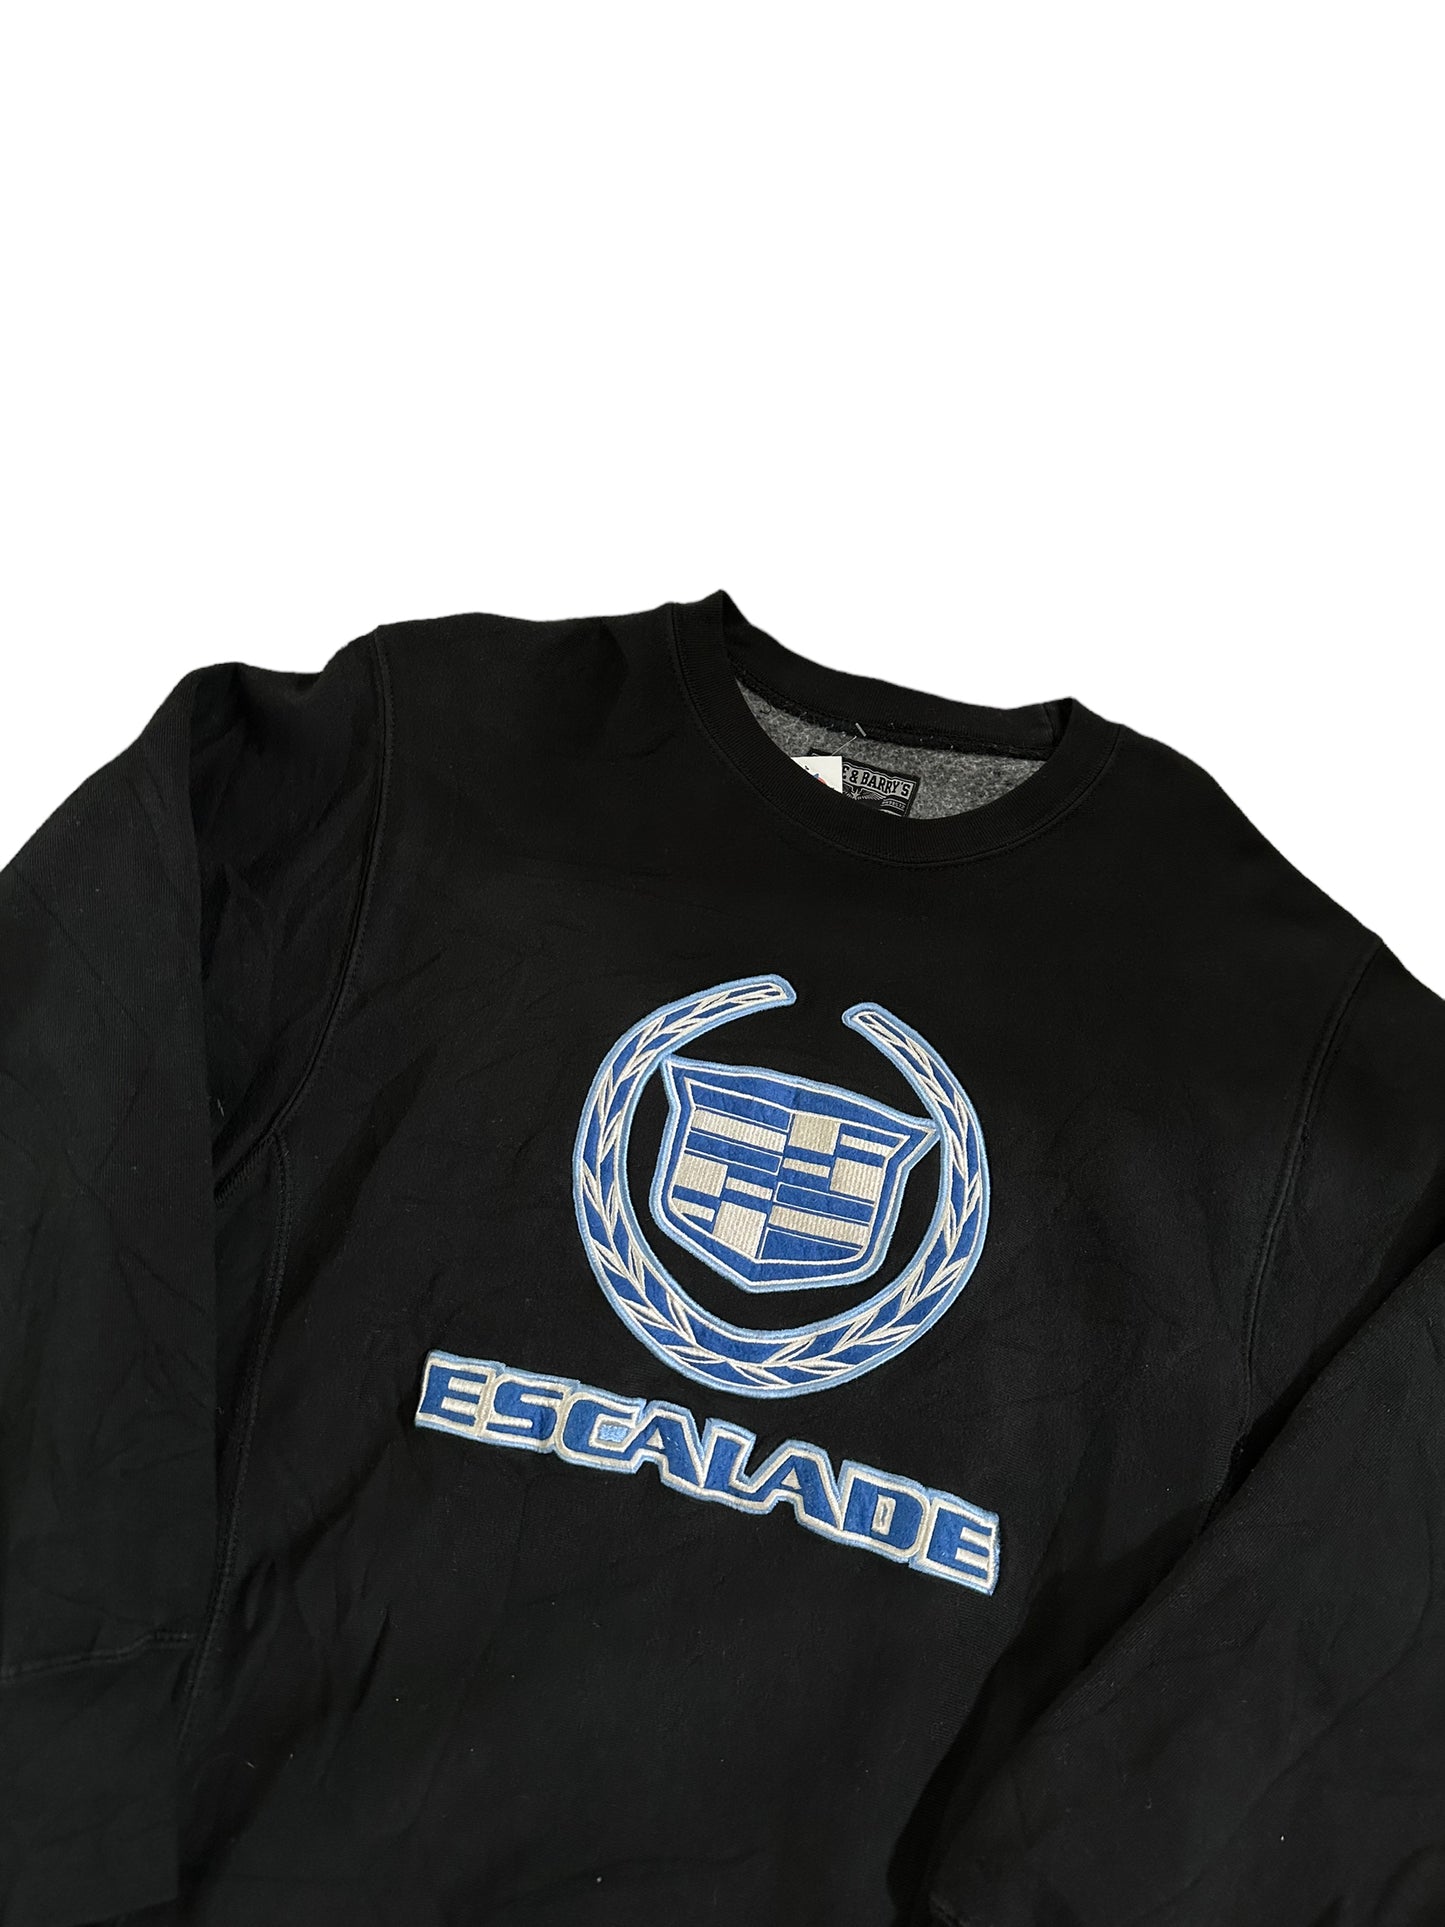 Vintage Escalade Sweatshirt